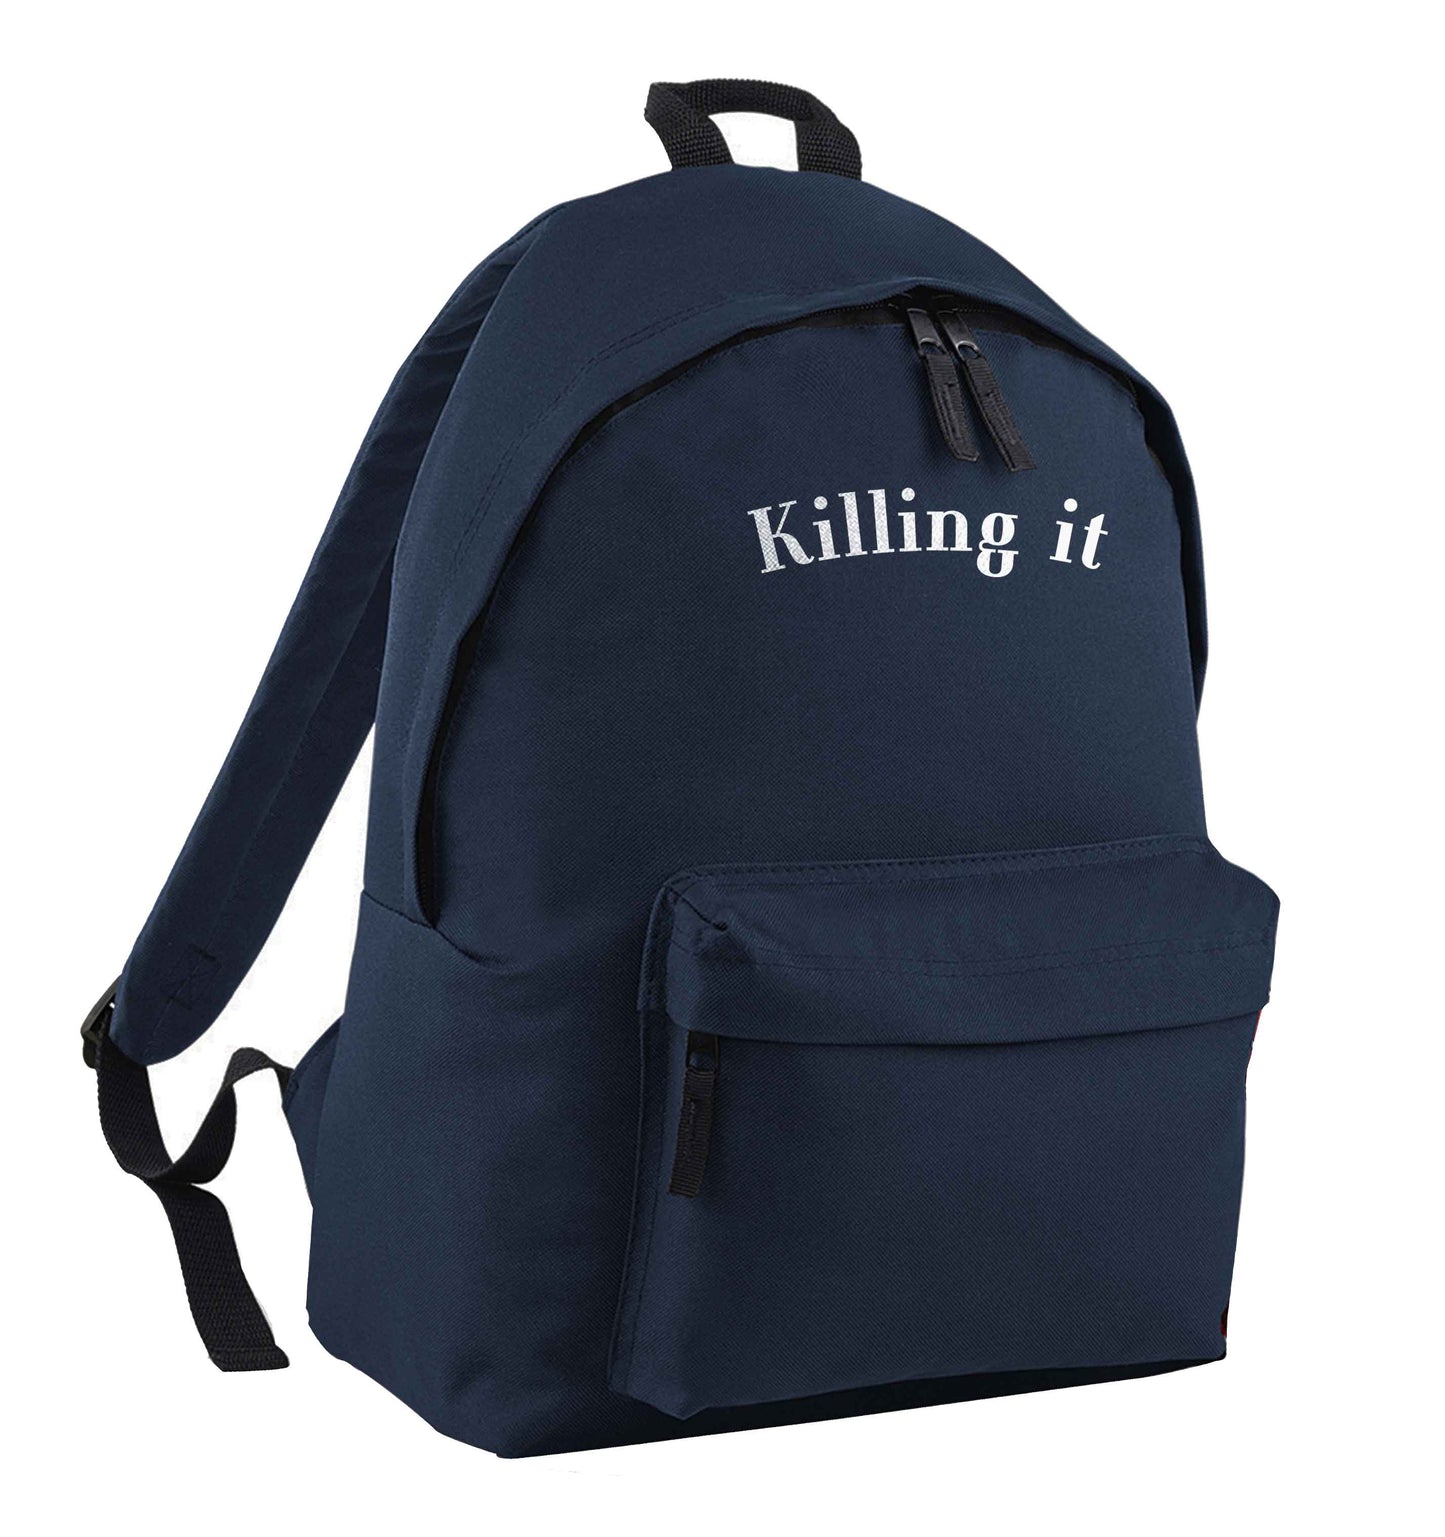 Killing it navy children's backpack